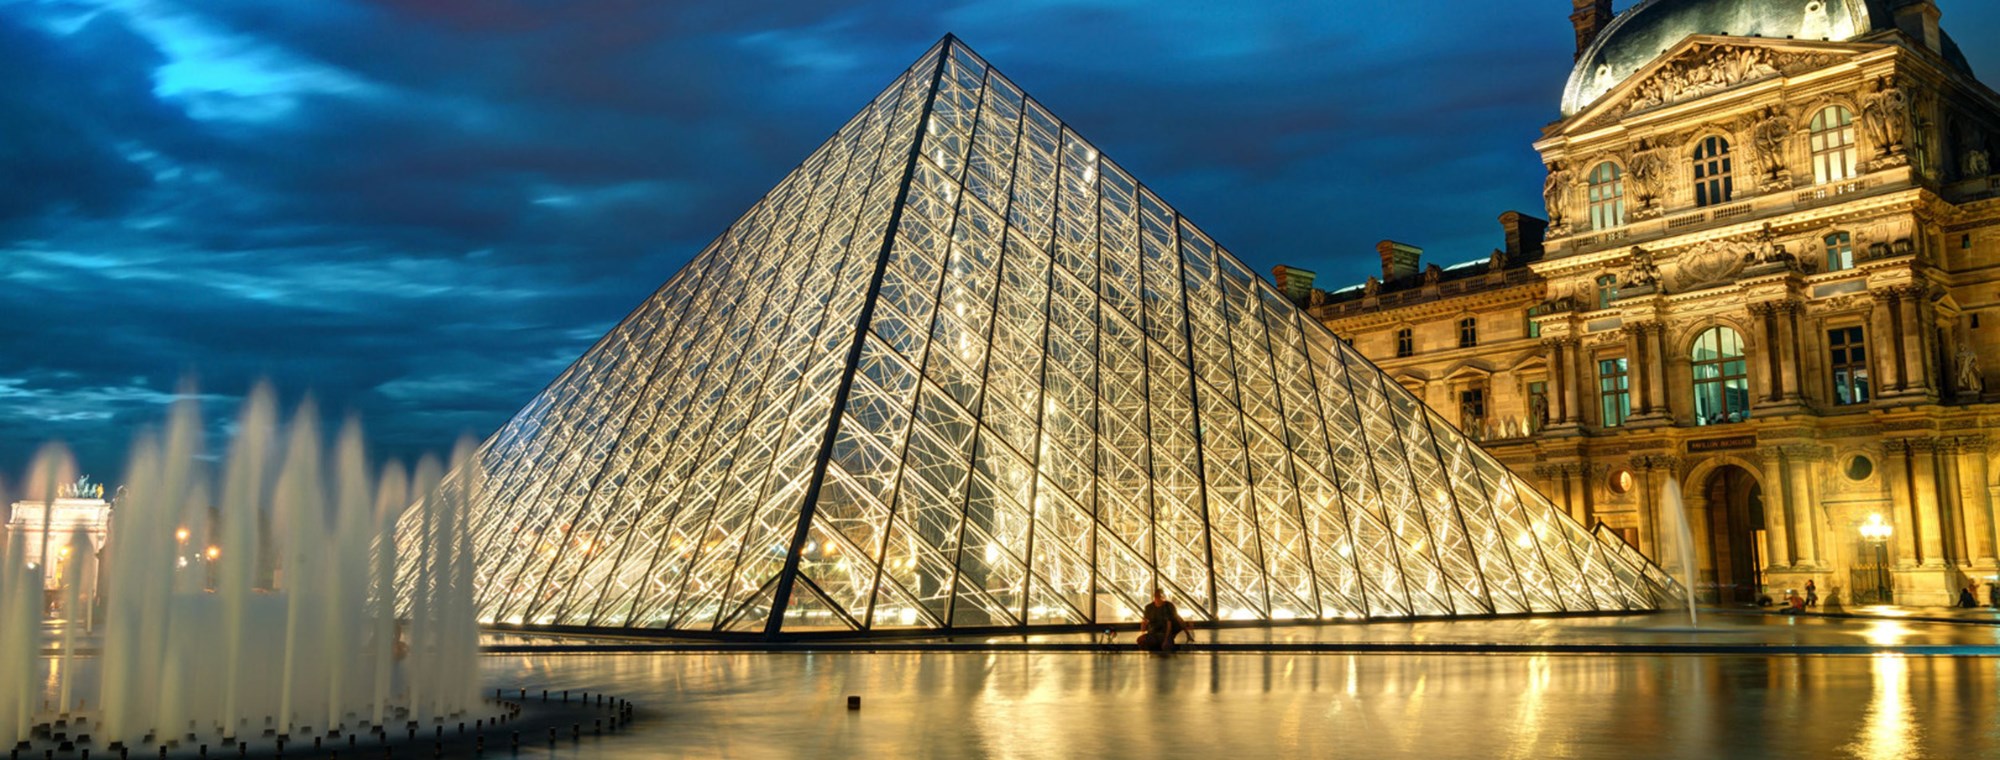 Tours of the Louvre, Paris, France